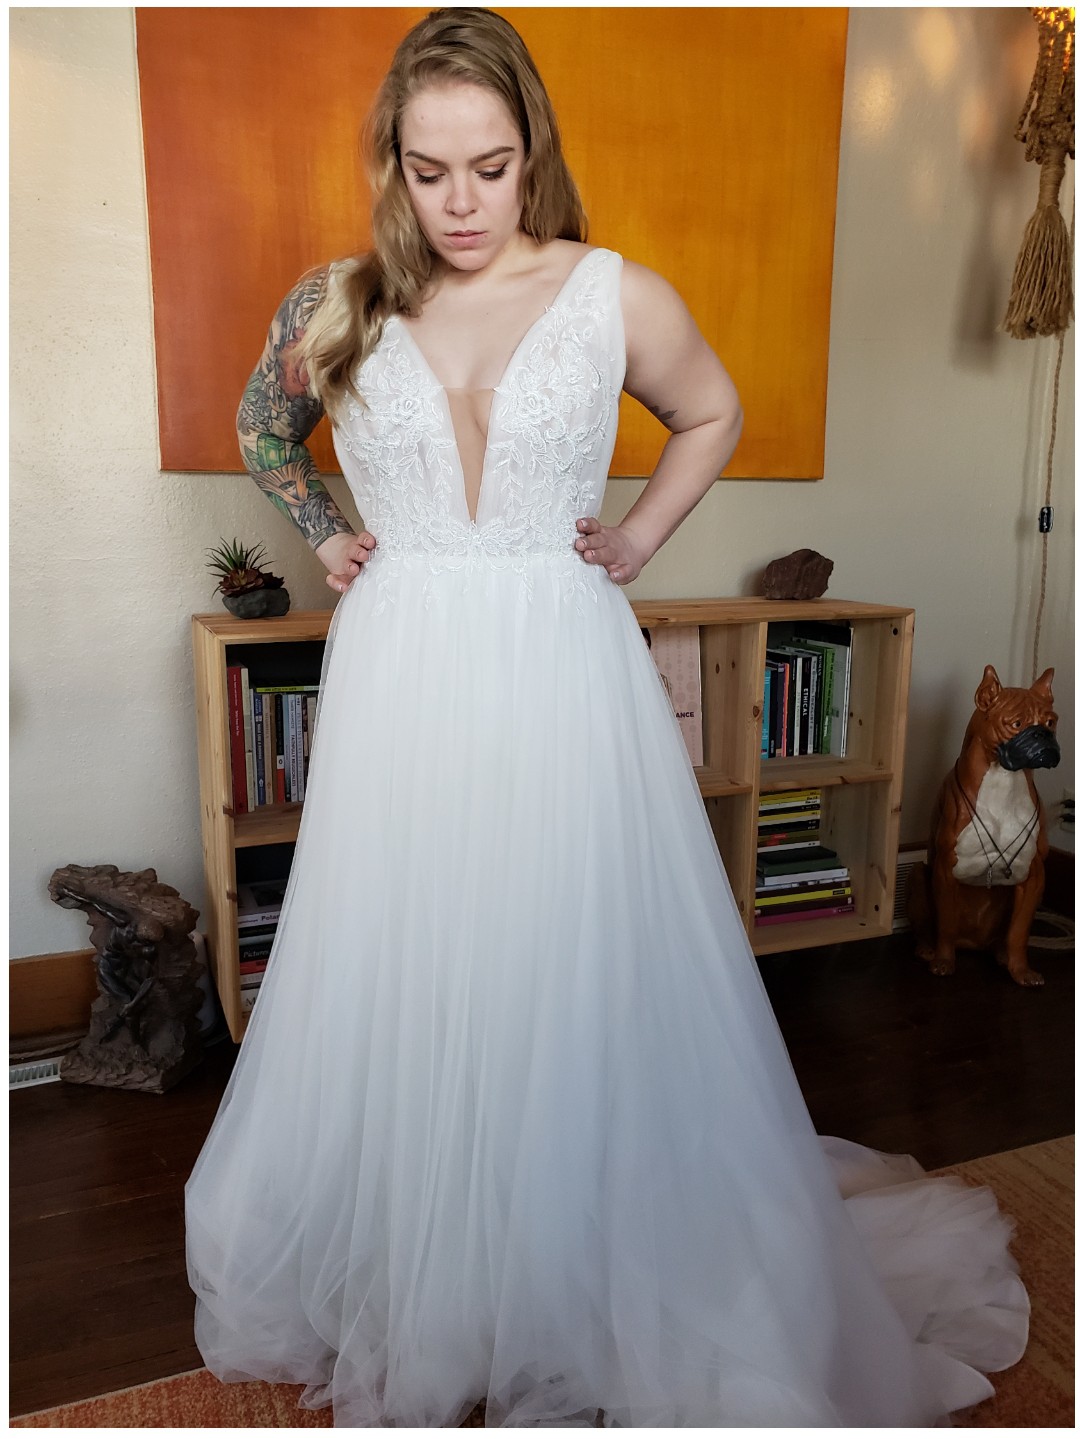 Maggie Sottero Rebecca Ingram Mckenna Wedding Dress - Stillwhite